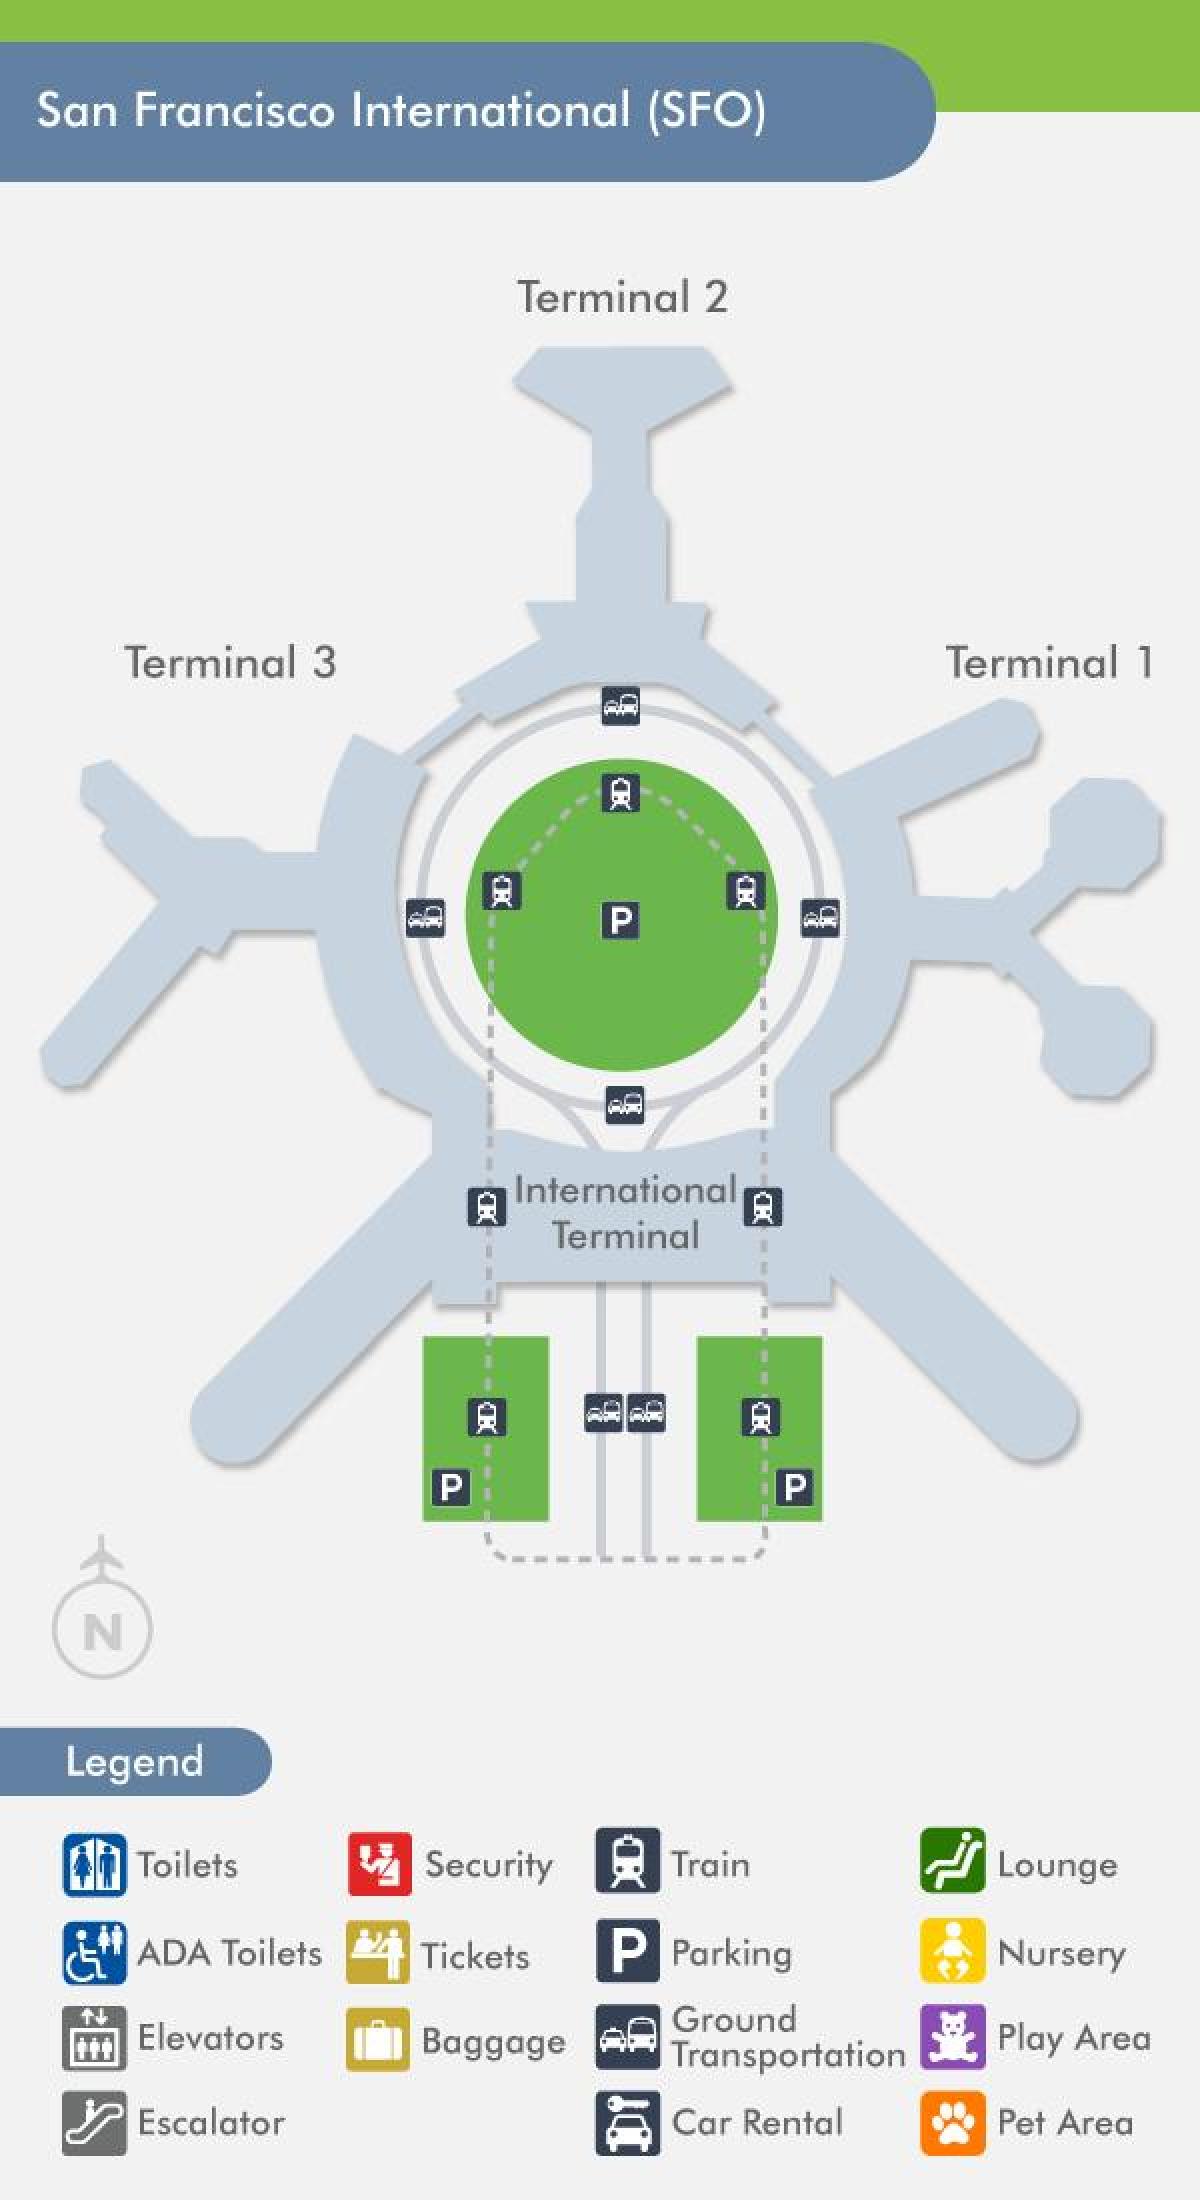 แผนที่ของ SFO สนามบินเทอร์มินัล 1